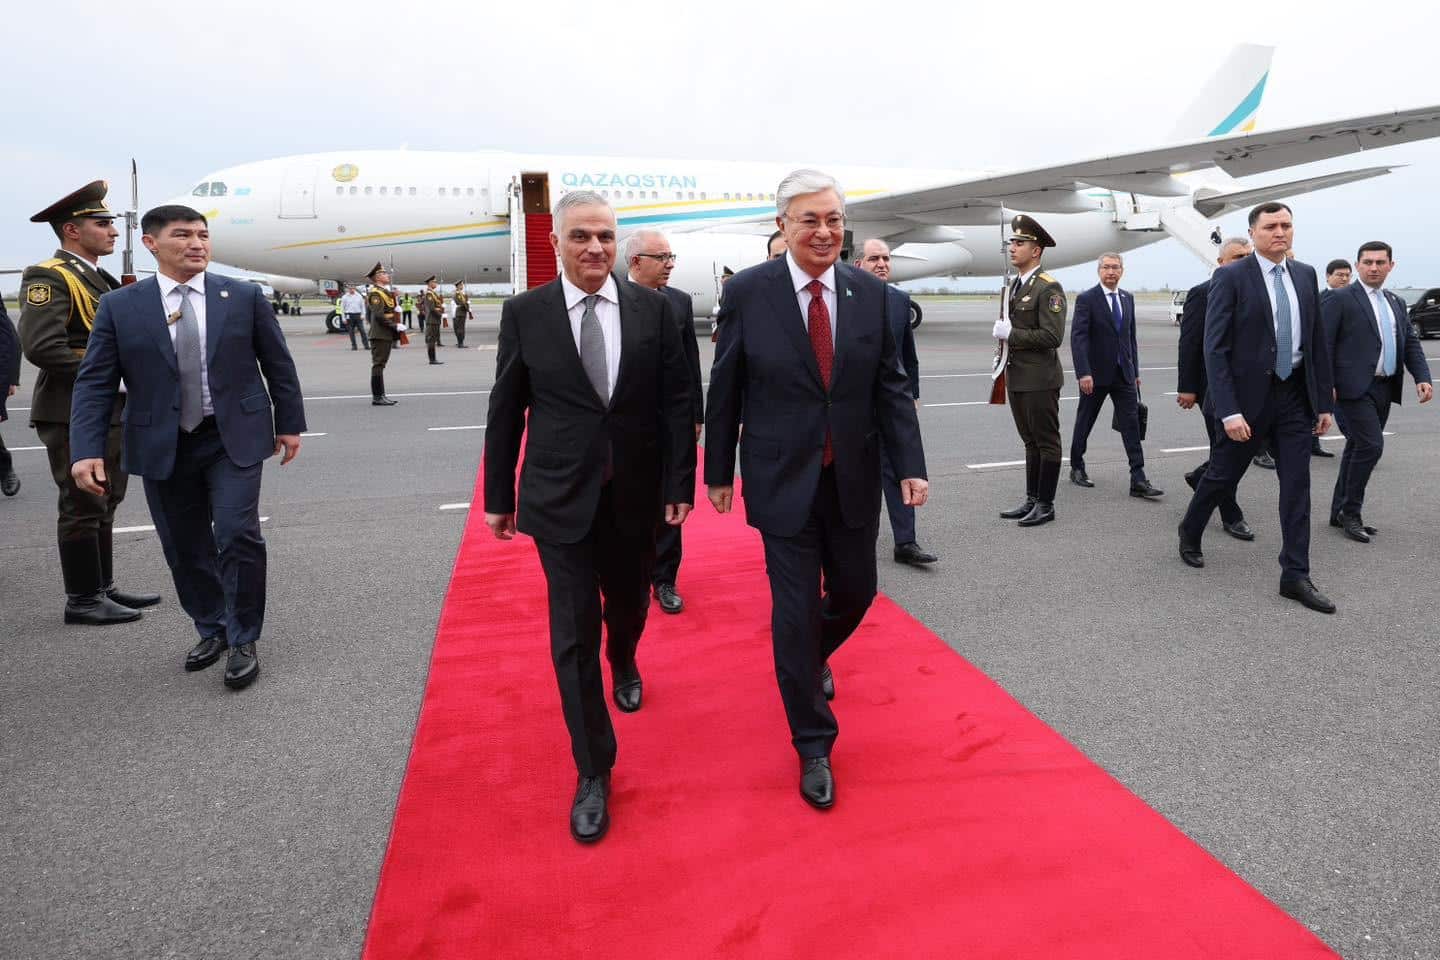 Ղազախստանի նախագահը պաշտոնական այցով ժամանել է Հայաստան